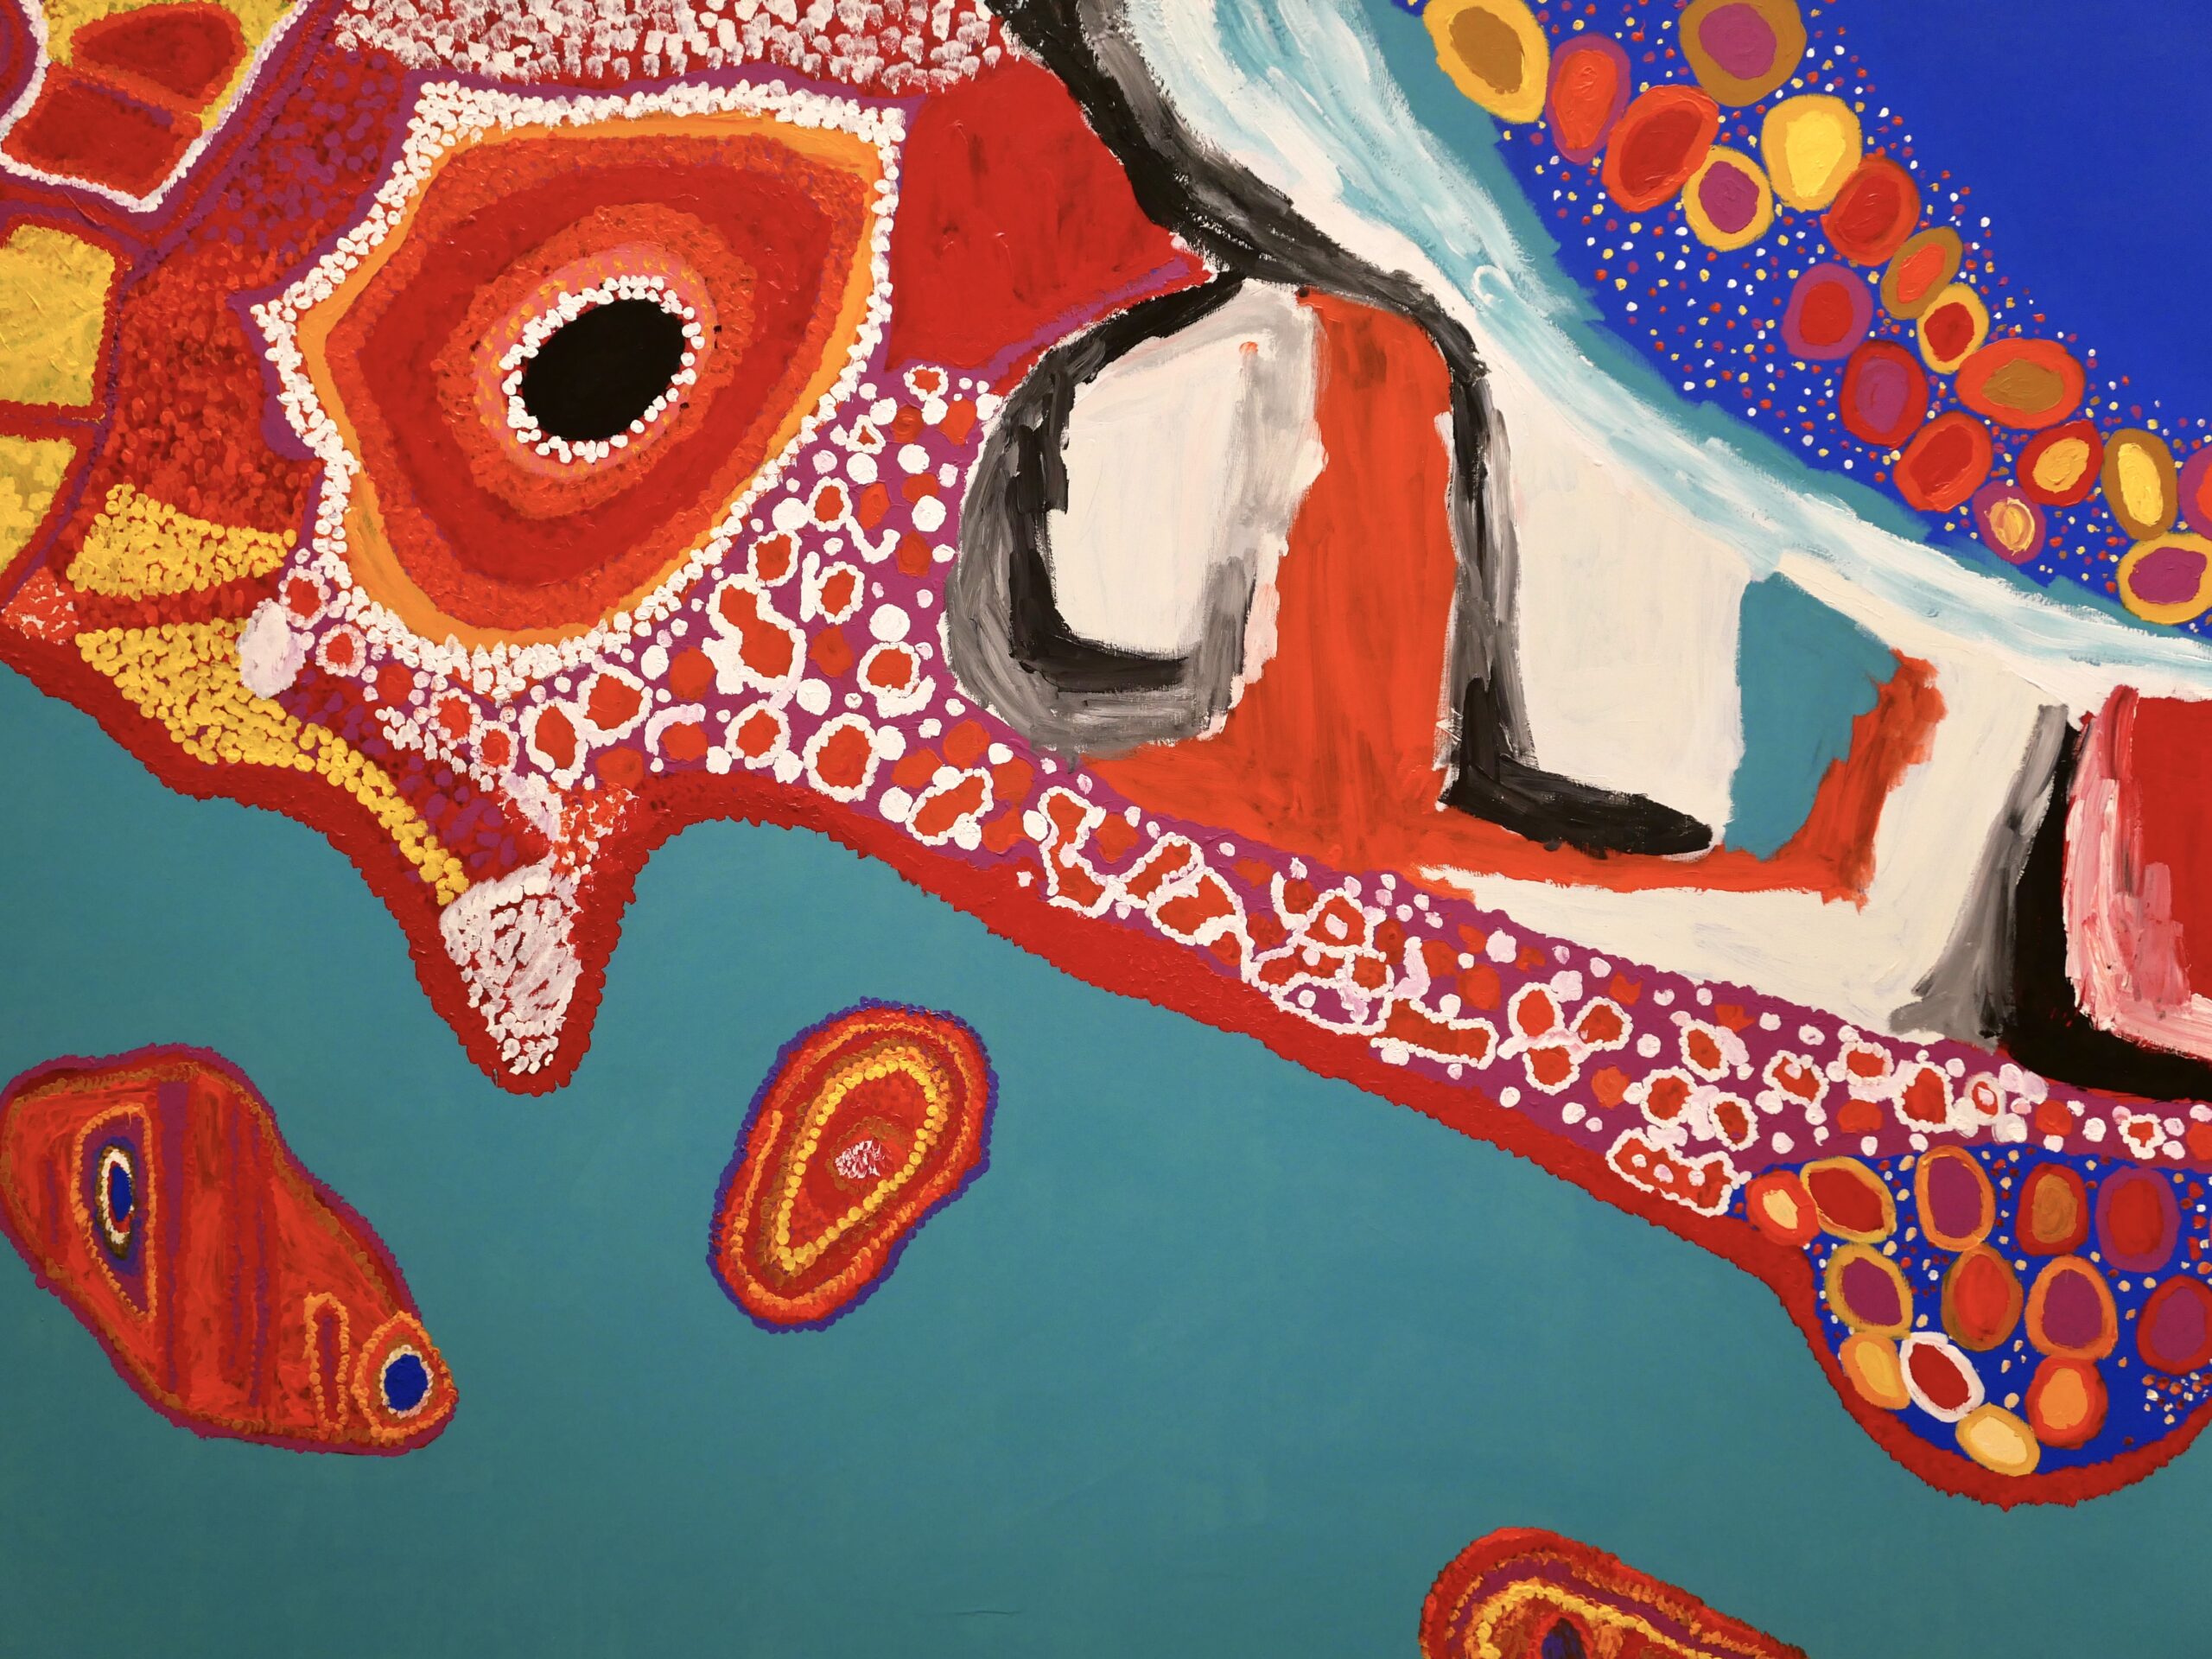 I colori della mia terra. Le grandi tele di Sally Gabori ricordano la storia degli Aborigeni australiani